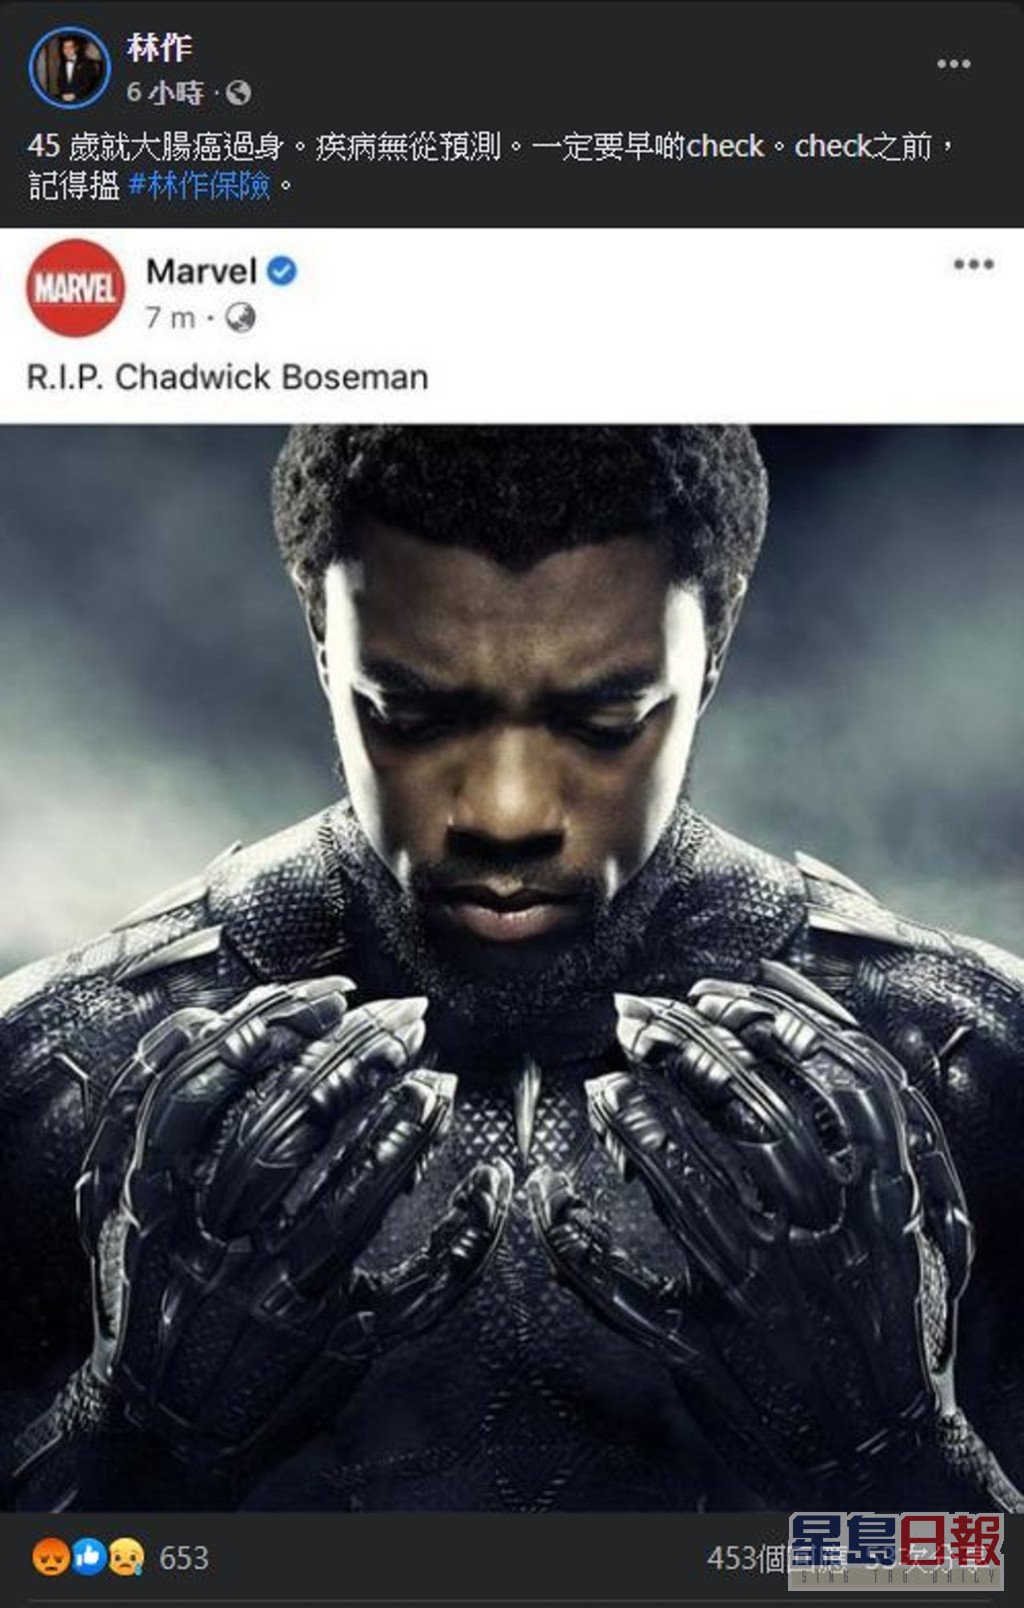 2020年8月28日，Marvel超級英雄片《黑豹Black Panther》男主角查特域克保斯曼不敵癌魔離世，林作一度出Po抽水。